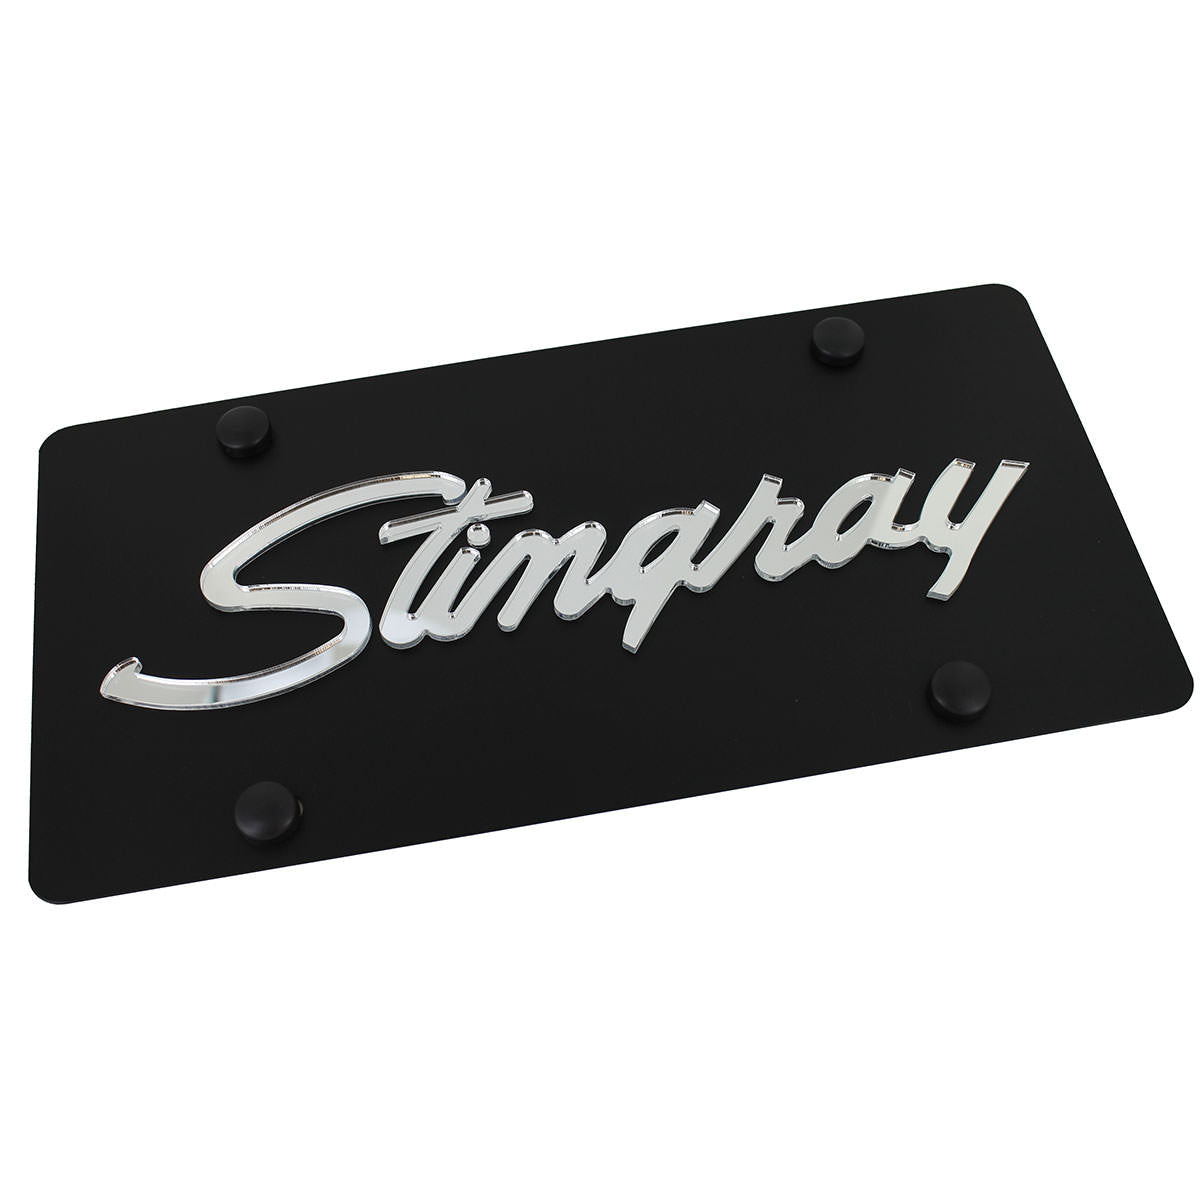 Chevy Stingray License Plate